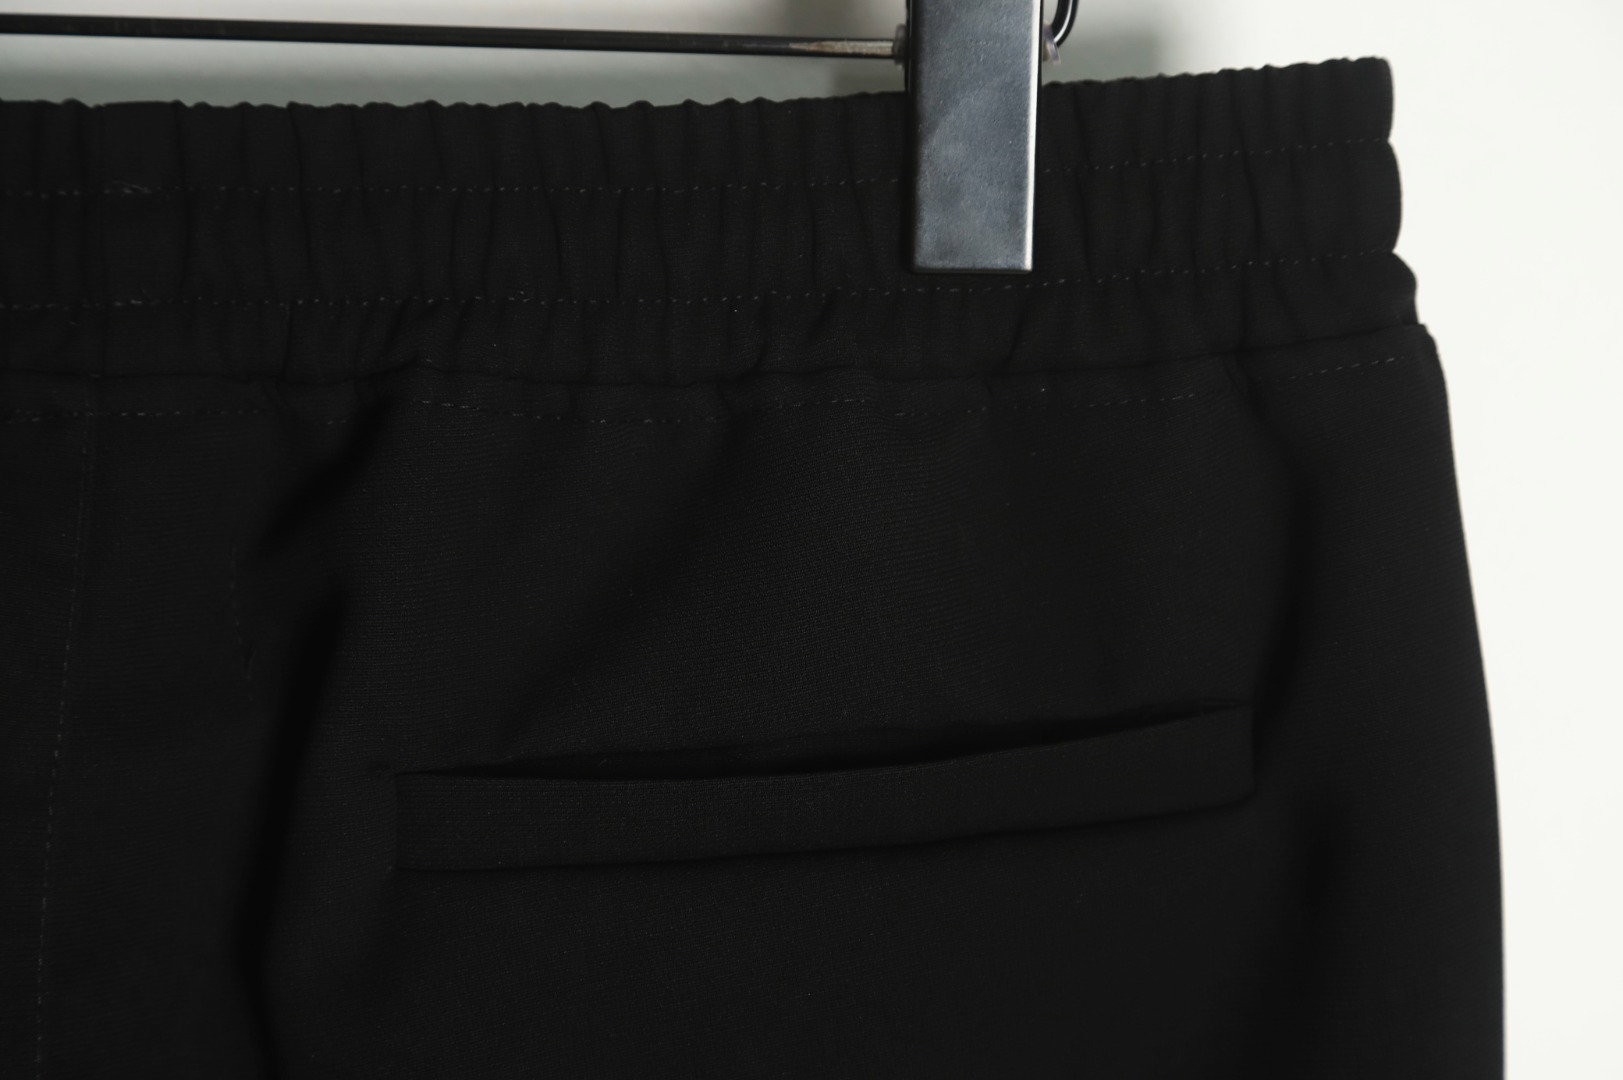 REPRESENT ズボン プレゼント ラッピングスーパーコピー カジュアルズボン HOT品質保証 パンツ 運動 人気もの ブラック_5